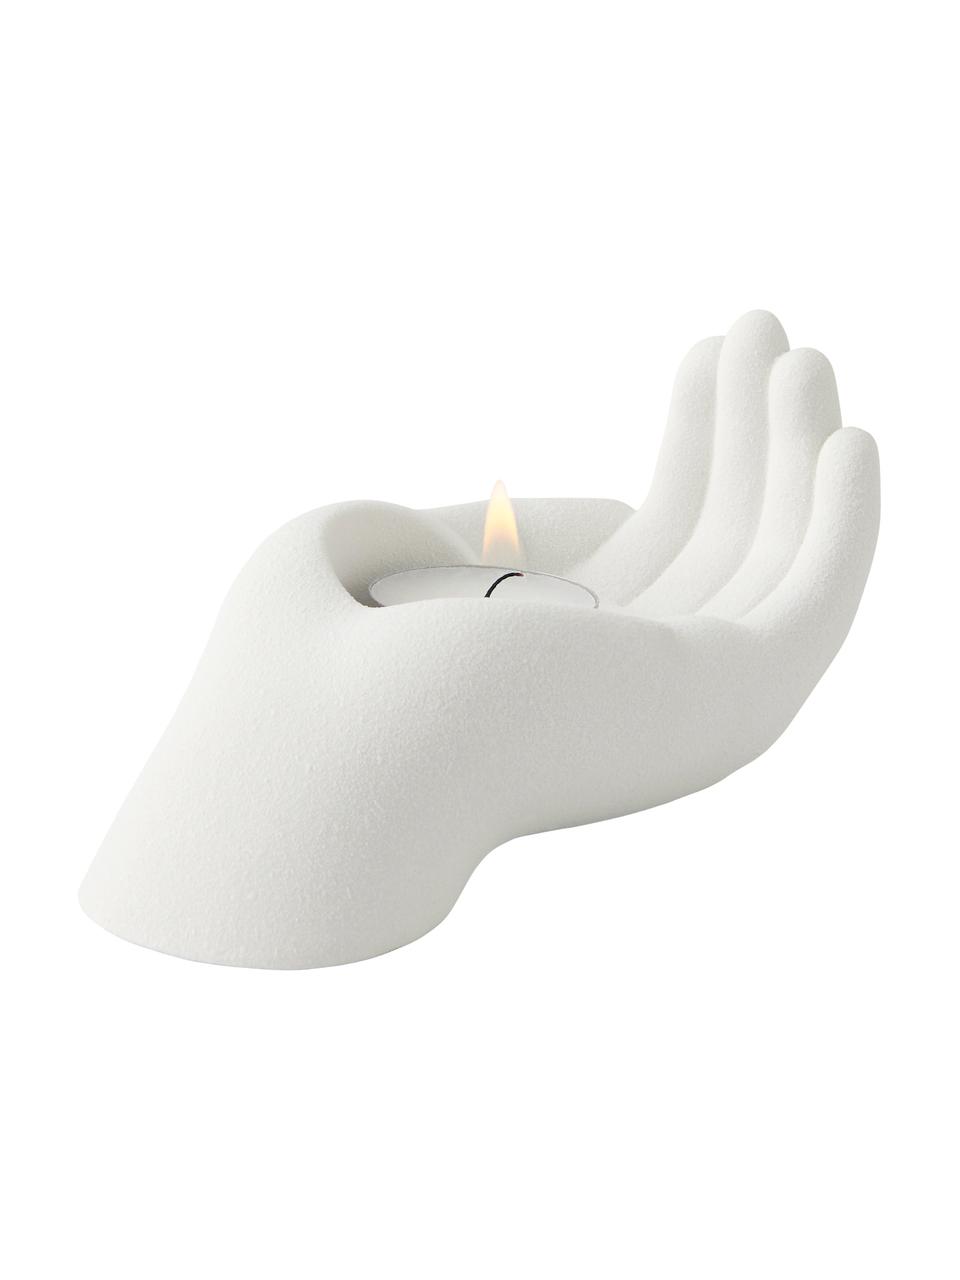 Porzellan-Teelichthalter Hand in Weiß, Porzellan, Weiß, B 15 x H 8 cm